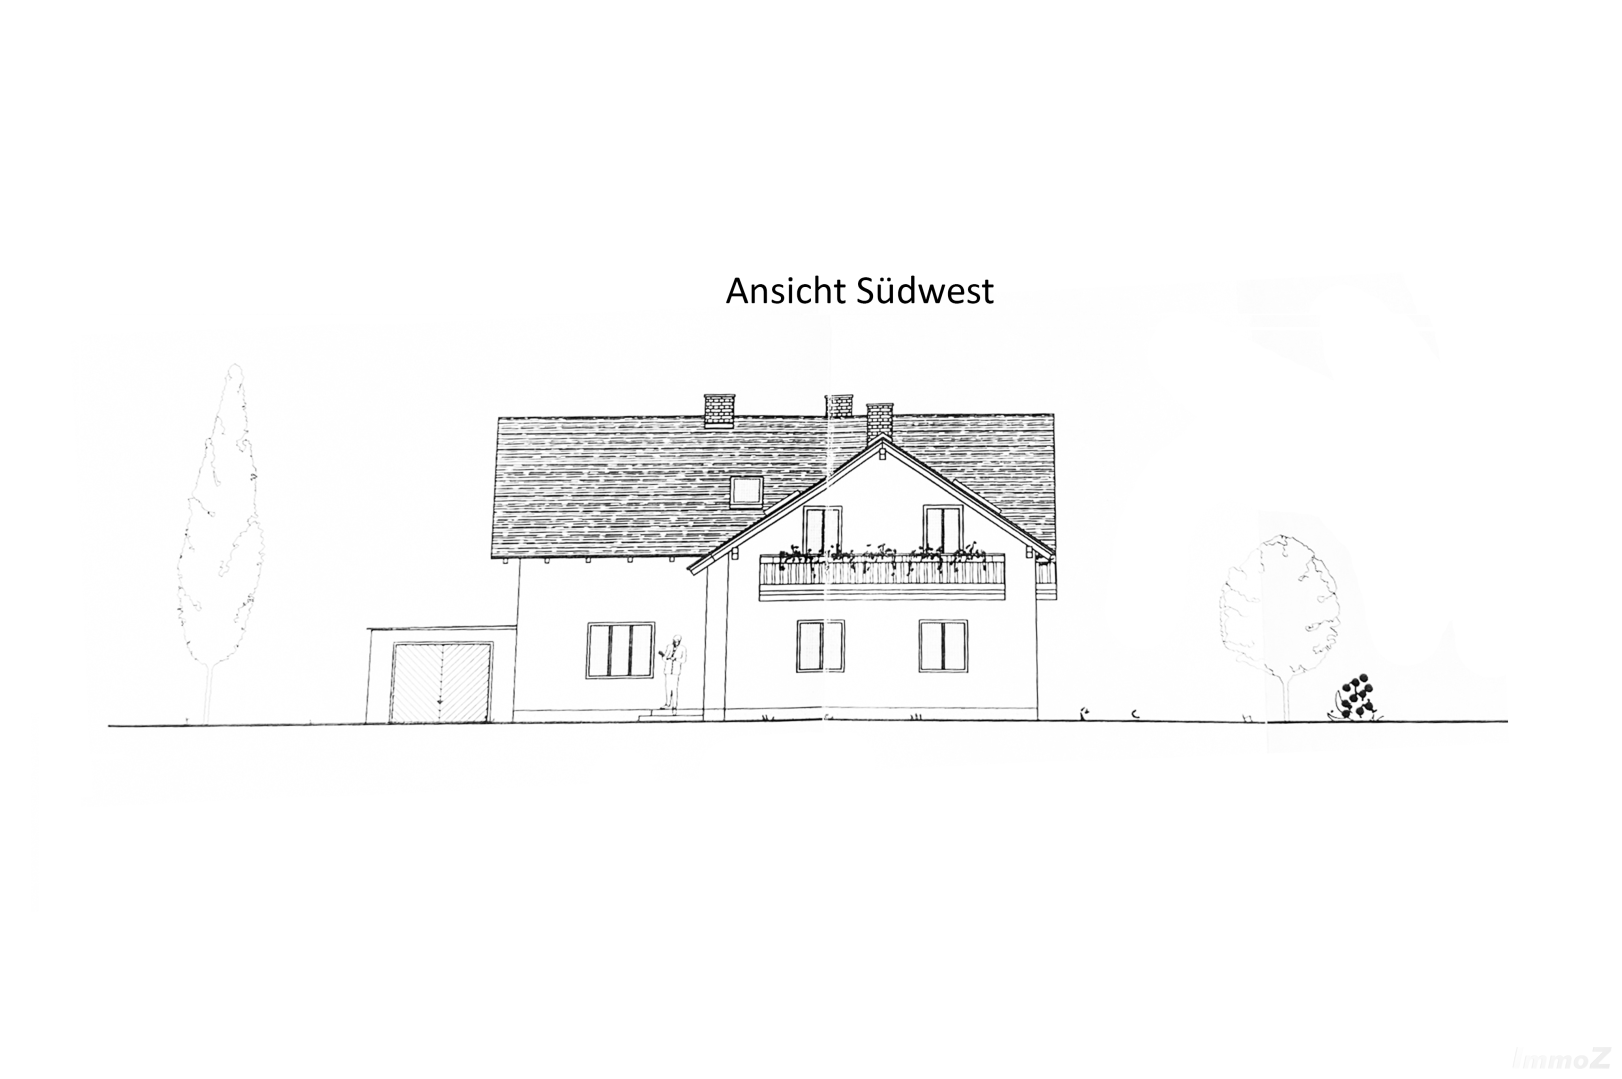 Zinshaus/Renditeobjekt/Gewerbeobjekt zum Kaufen: Judendorfer Straße 70, 8112 Gratwein - Ansicht Südwest